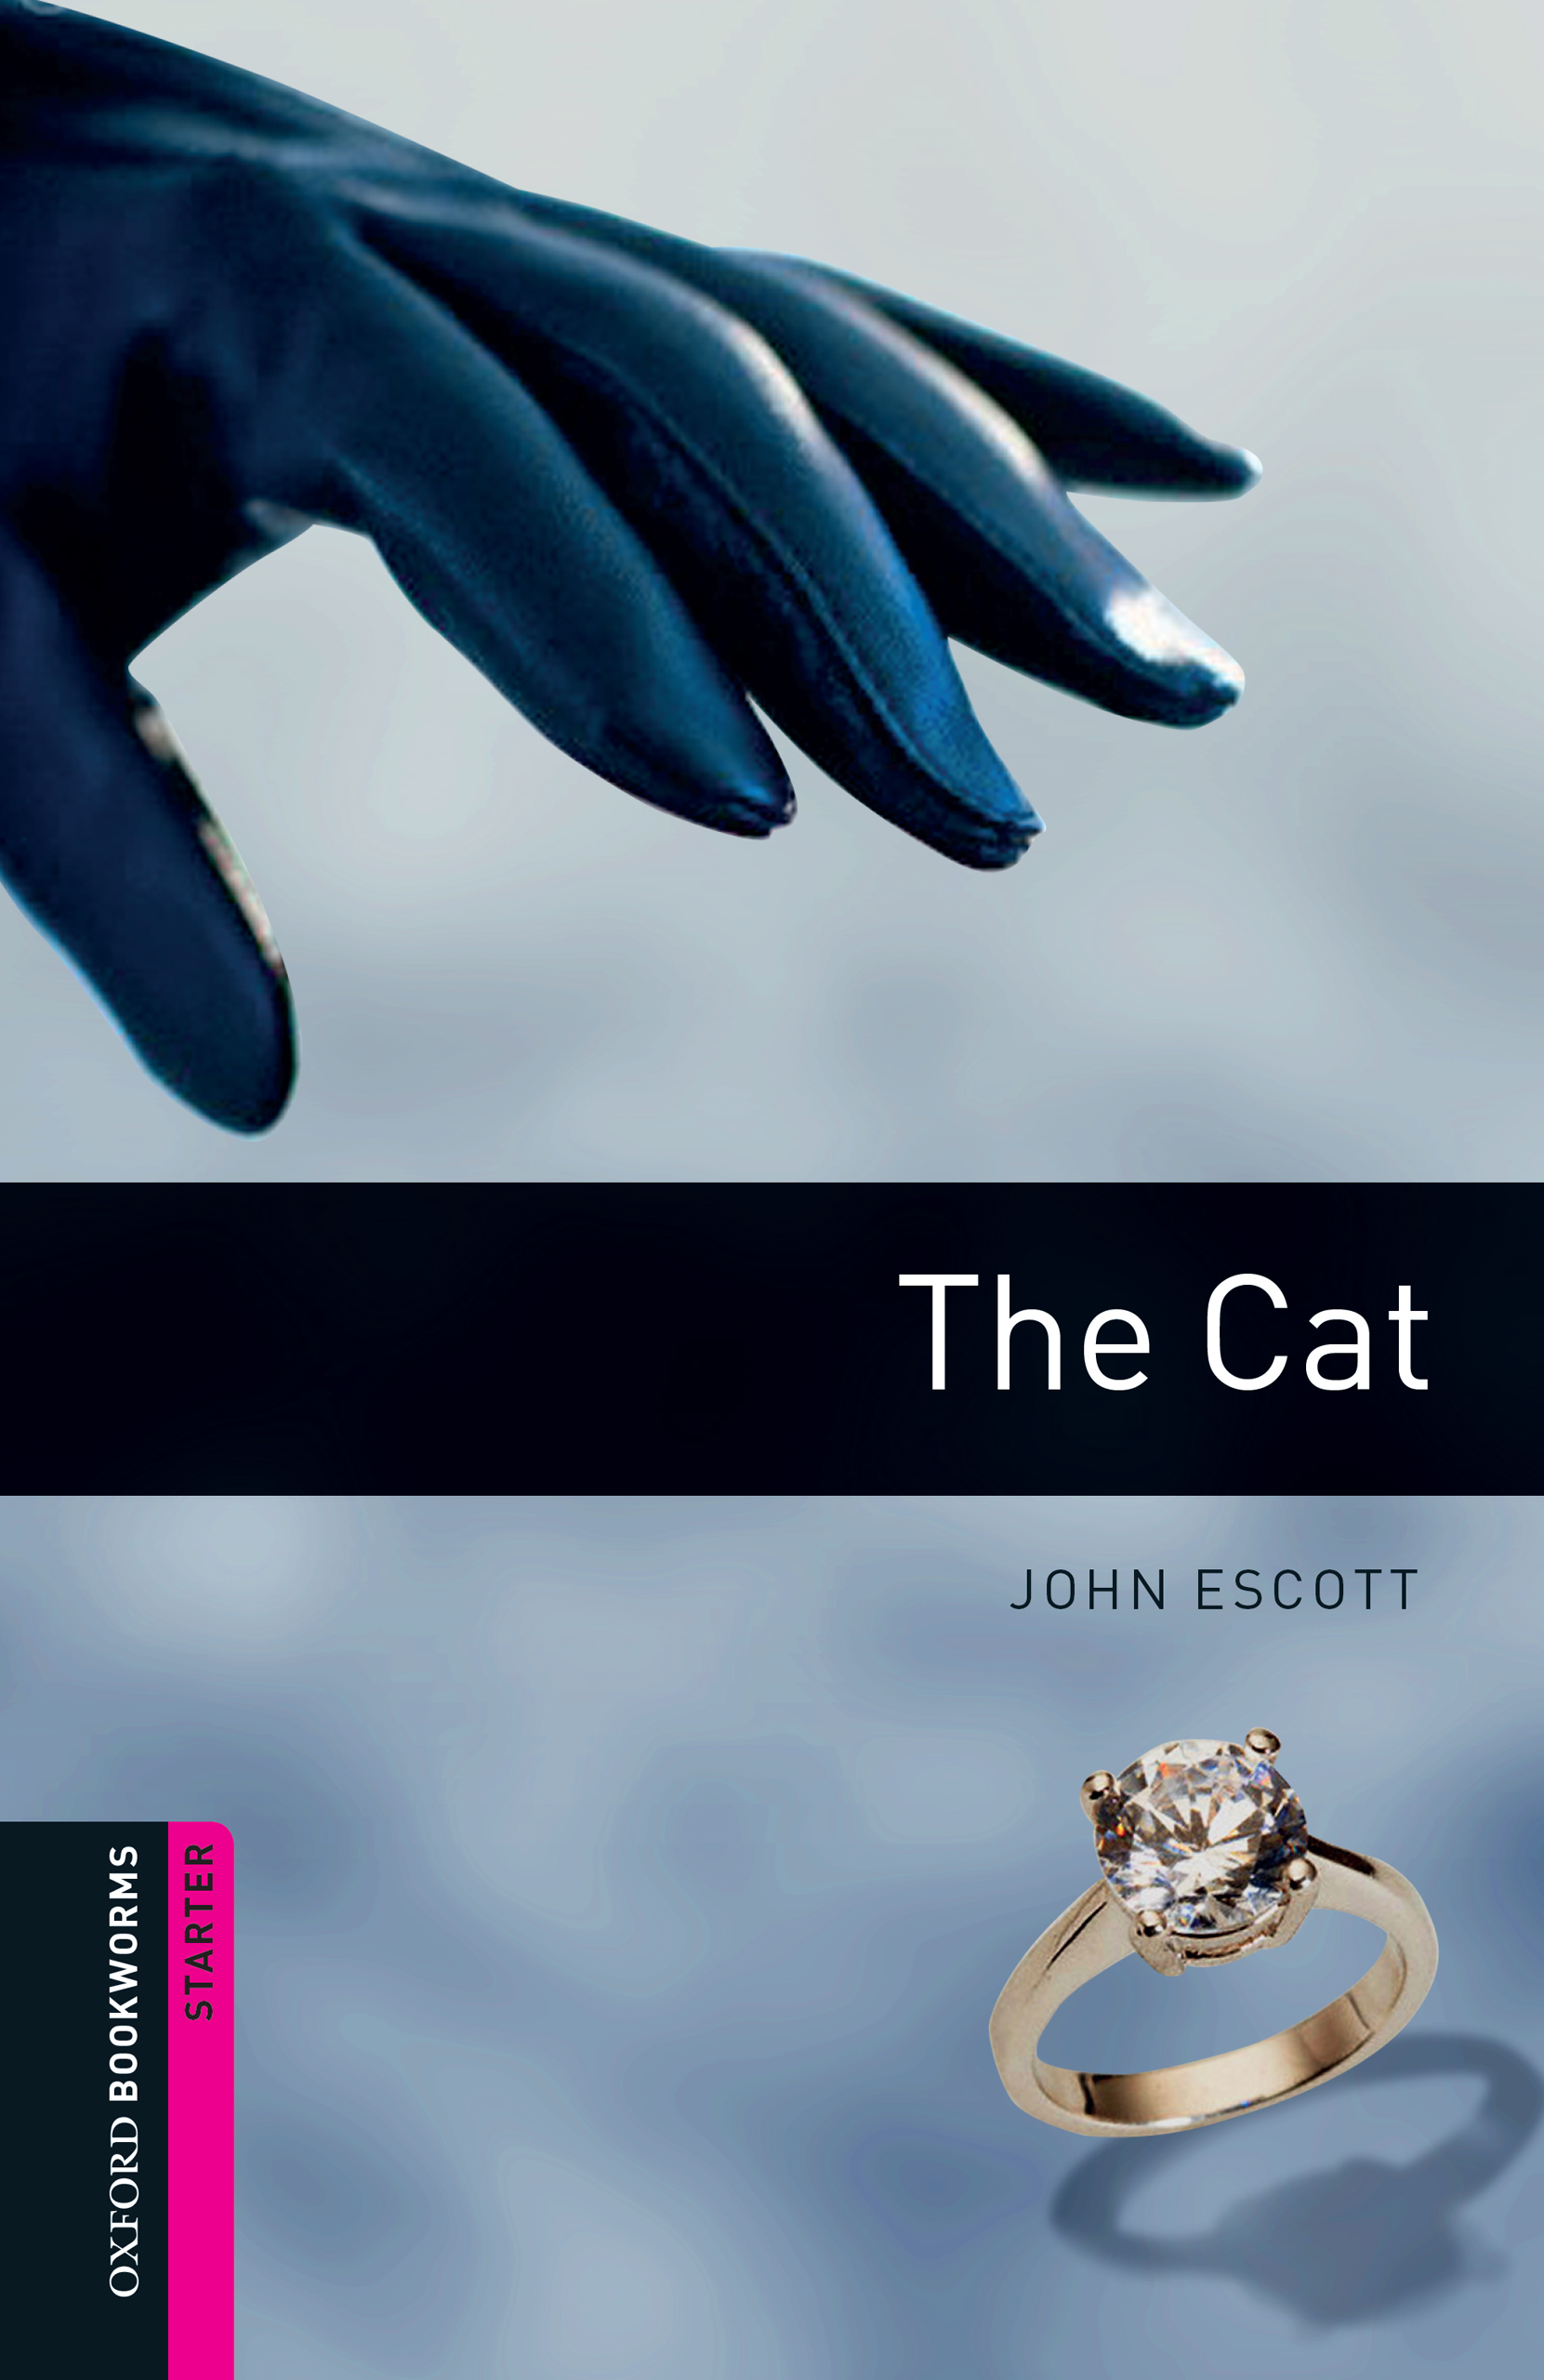 Книга The Cat из серии , созданная John Escott, может относится к жанру Иностранные языки, Иностранные языки, Зарубежная образовательная литература. Стоимость электронной книги The Cat с идентификатором 23220478 составляет 363.65 руб.